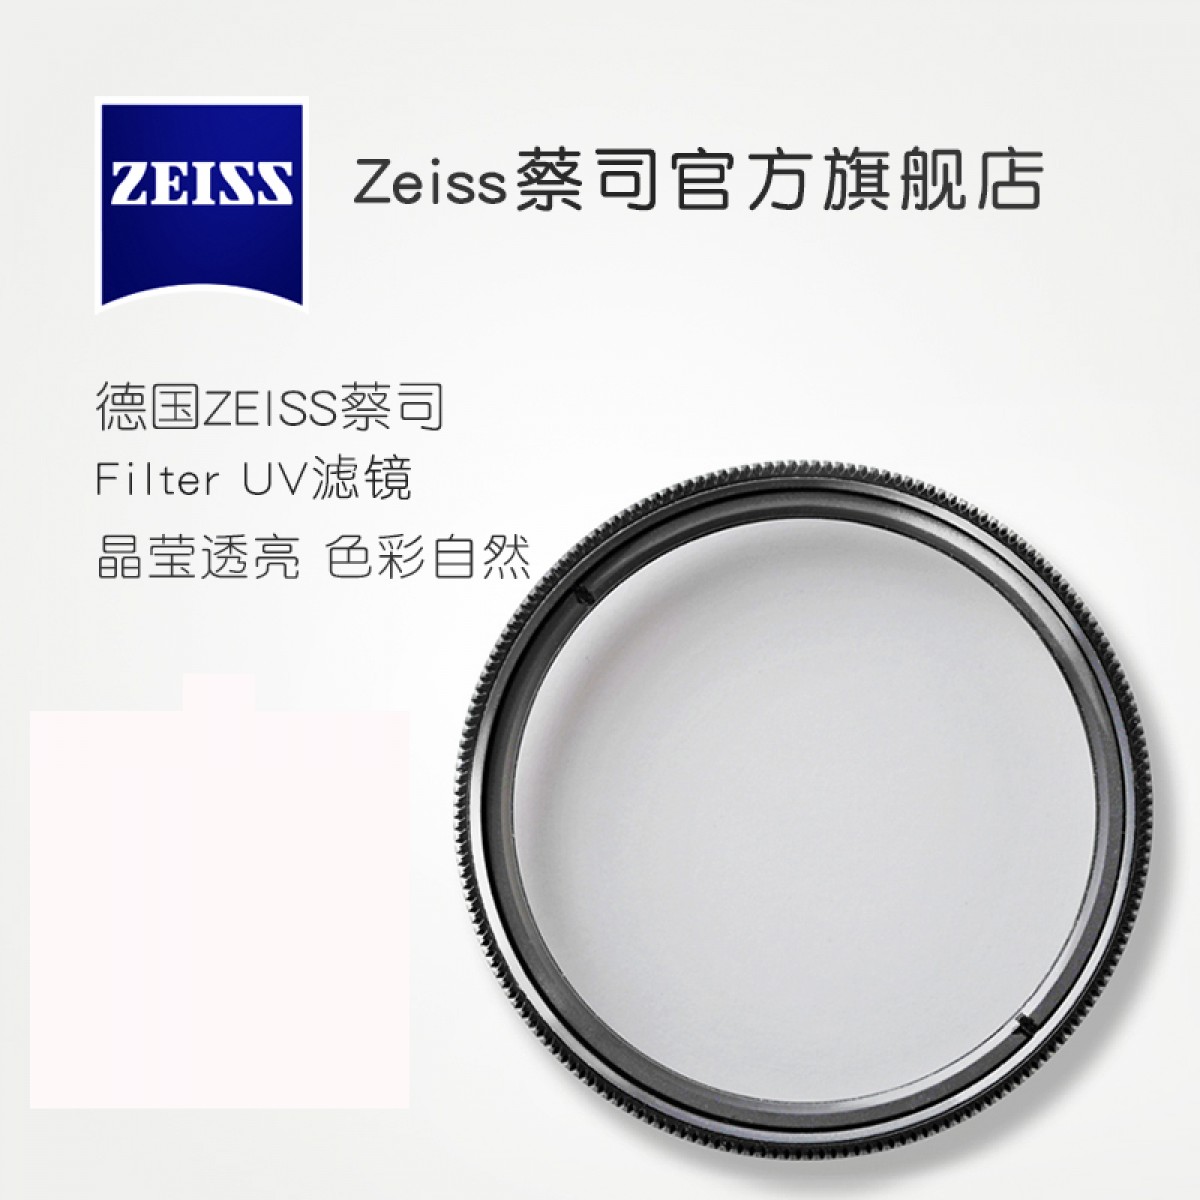 ZEISS/蔡司 UV Filter 46mm 卡尔蔡司T*镀膜 UV滤镜 晶莹透亮